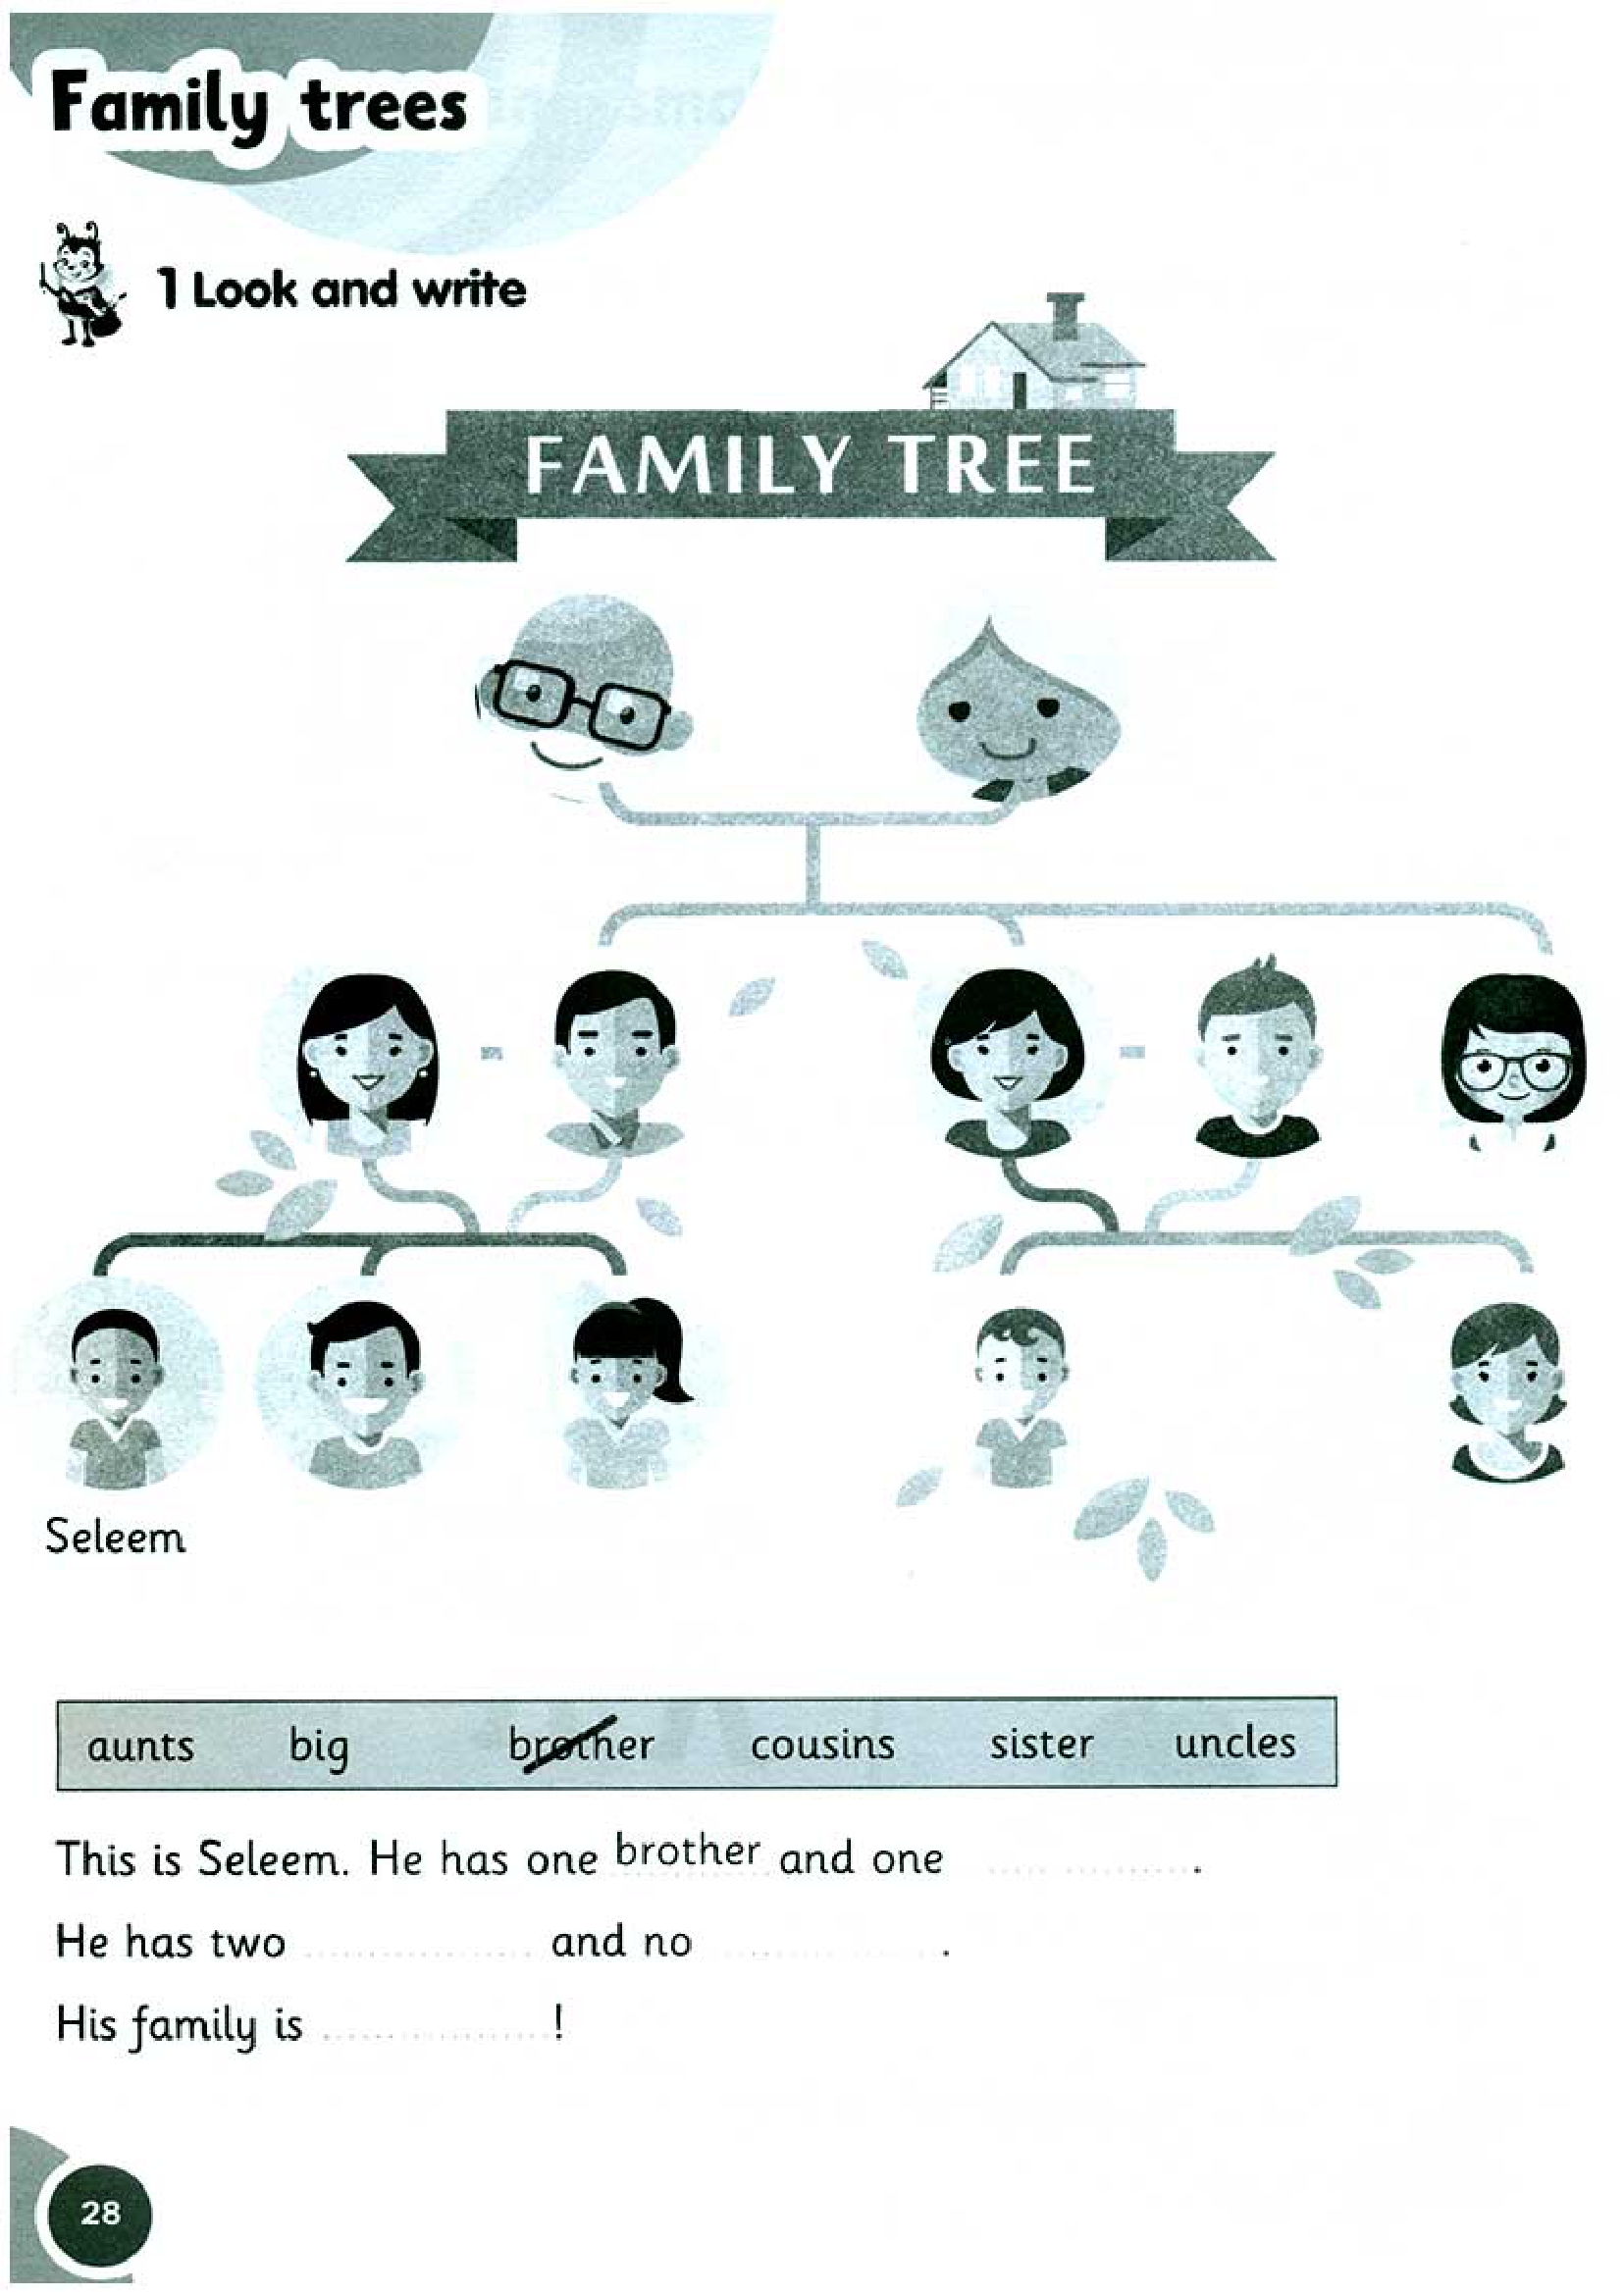 Family trees